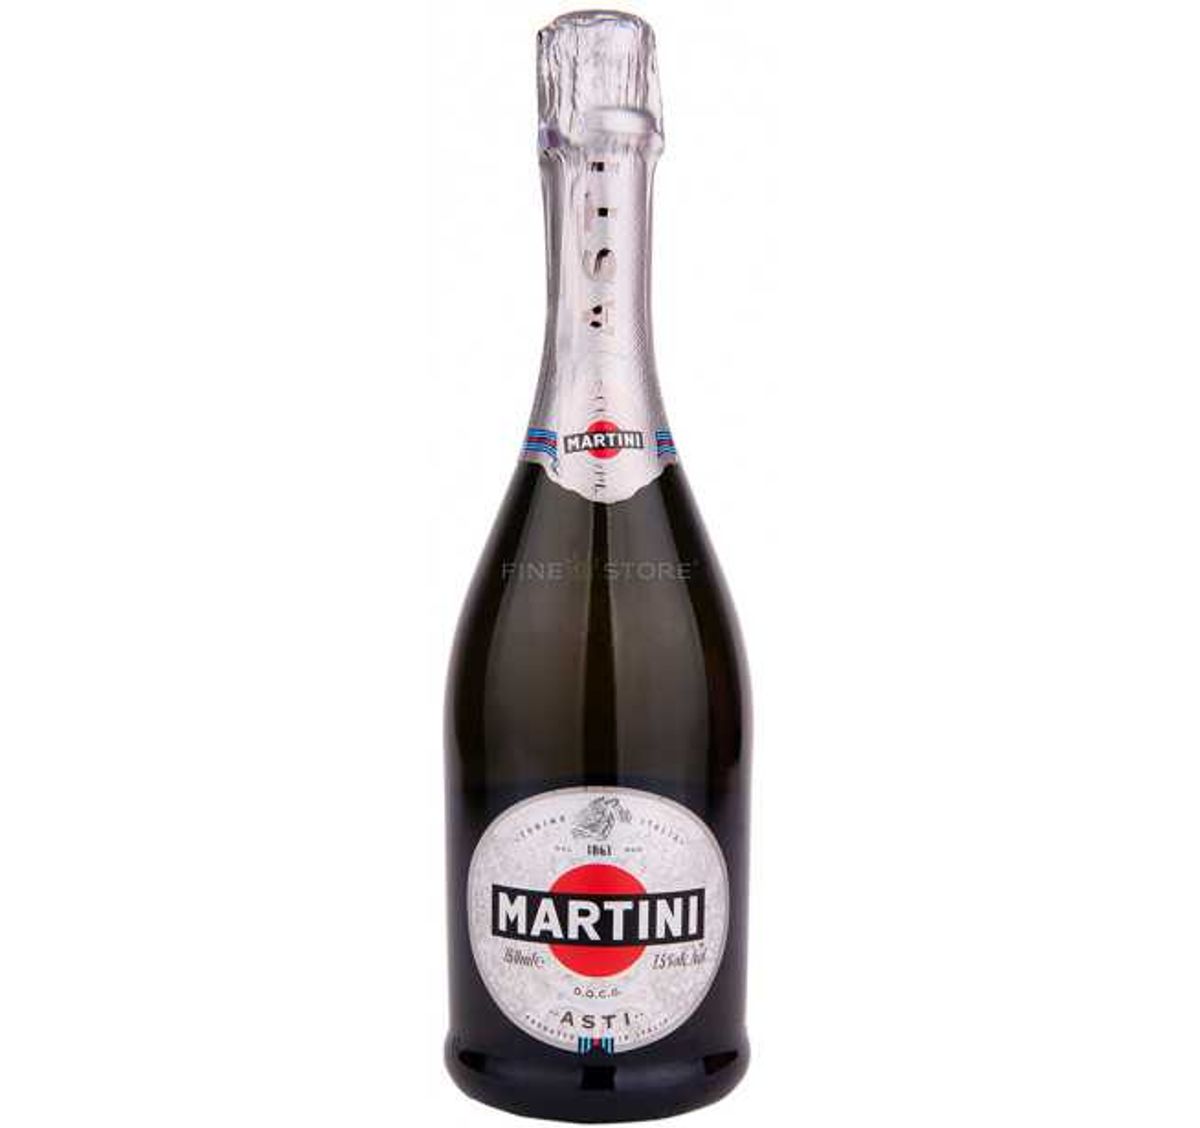 Martini - Asti Martini